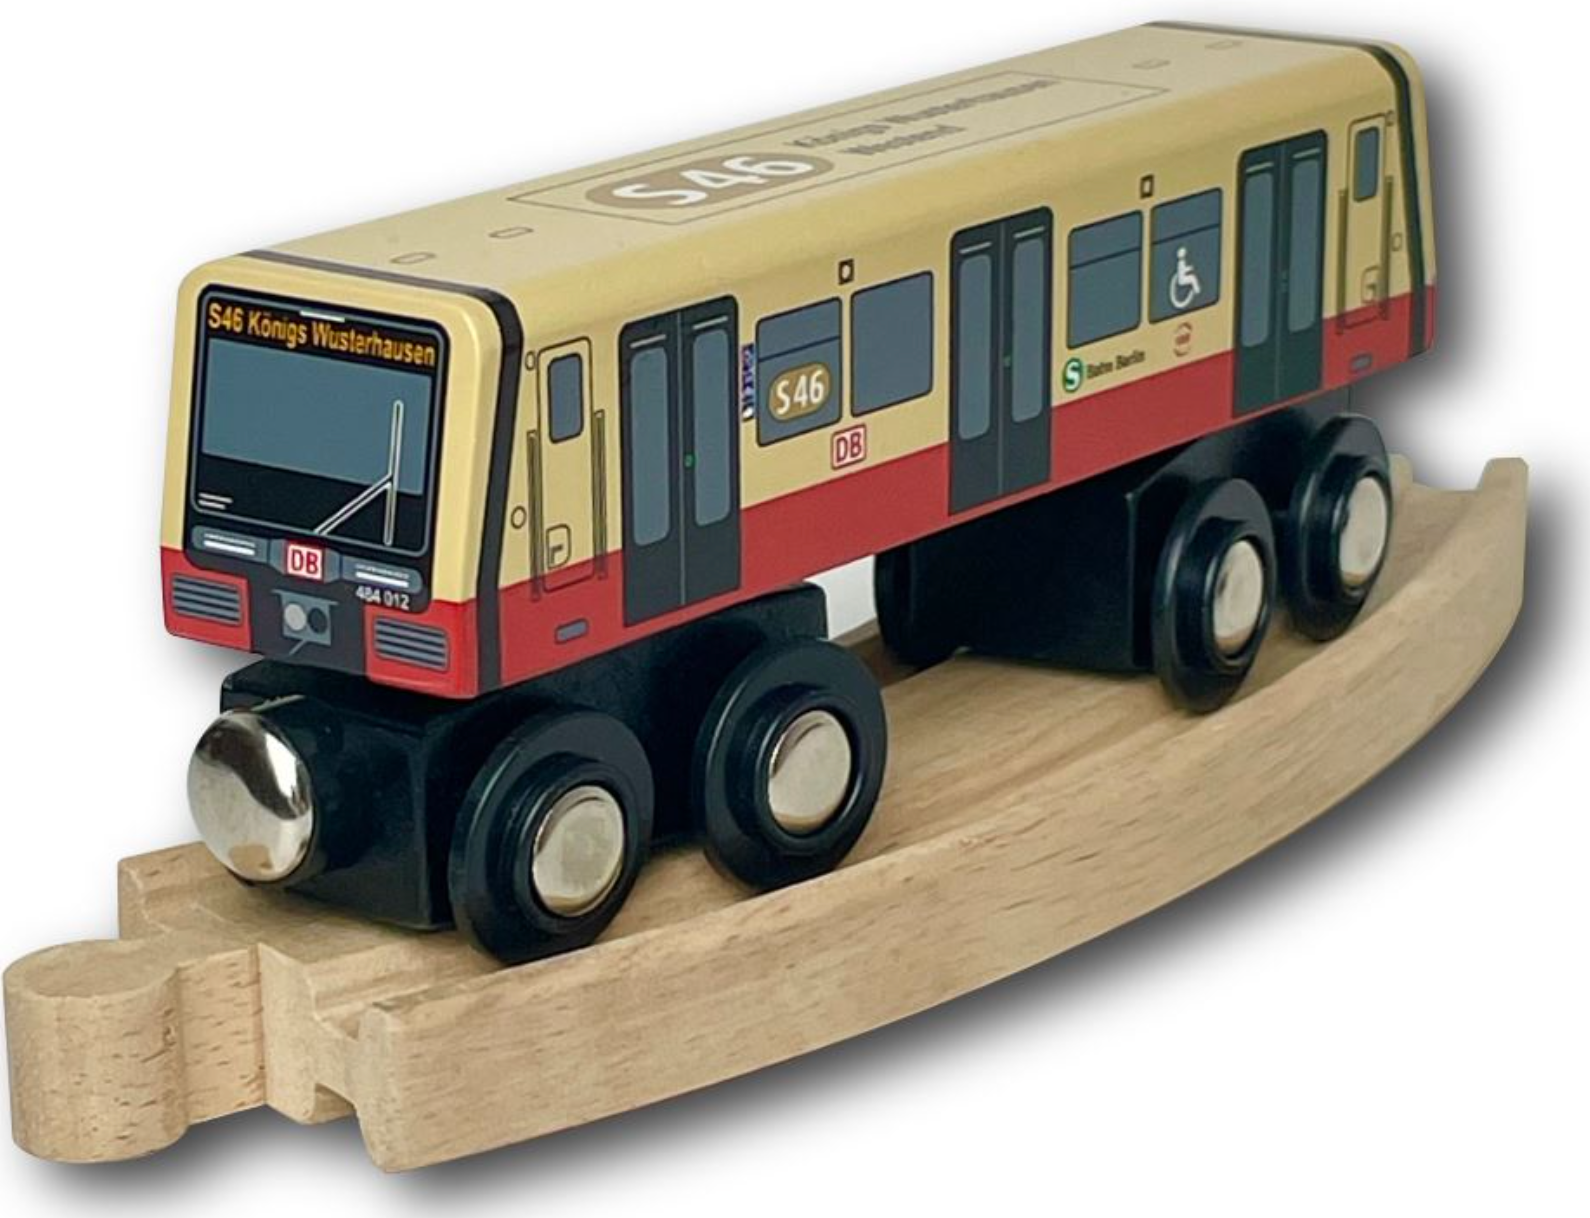 Miniatur Holz S-Bahn Berlin S46 zum Spielen